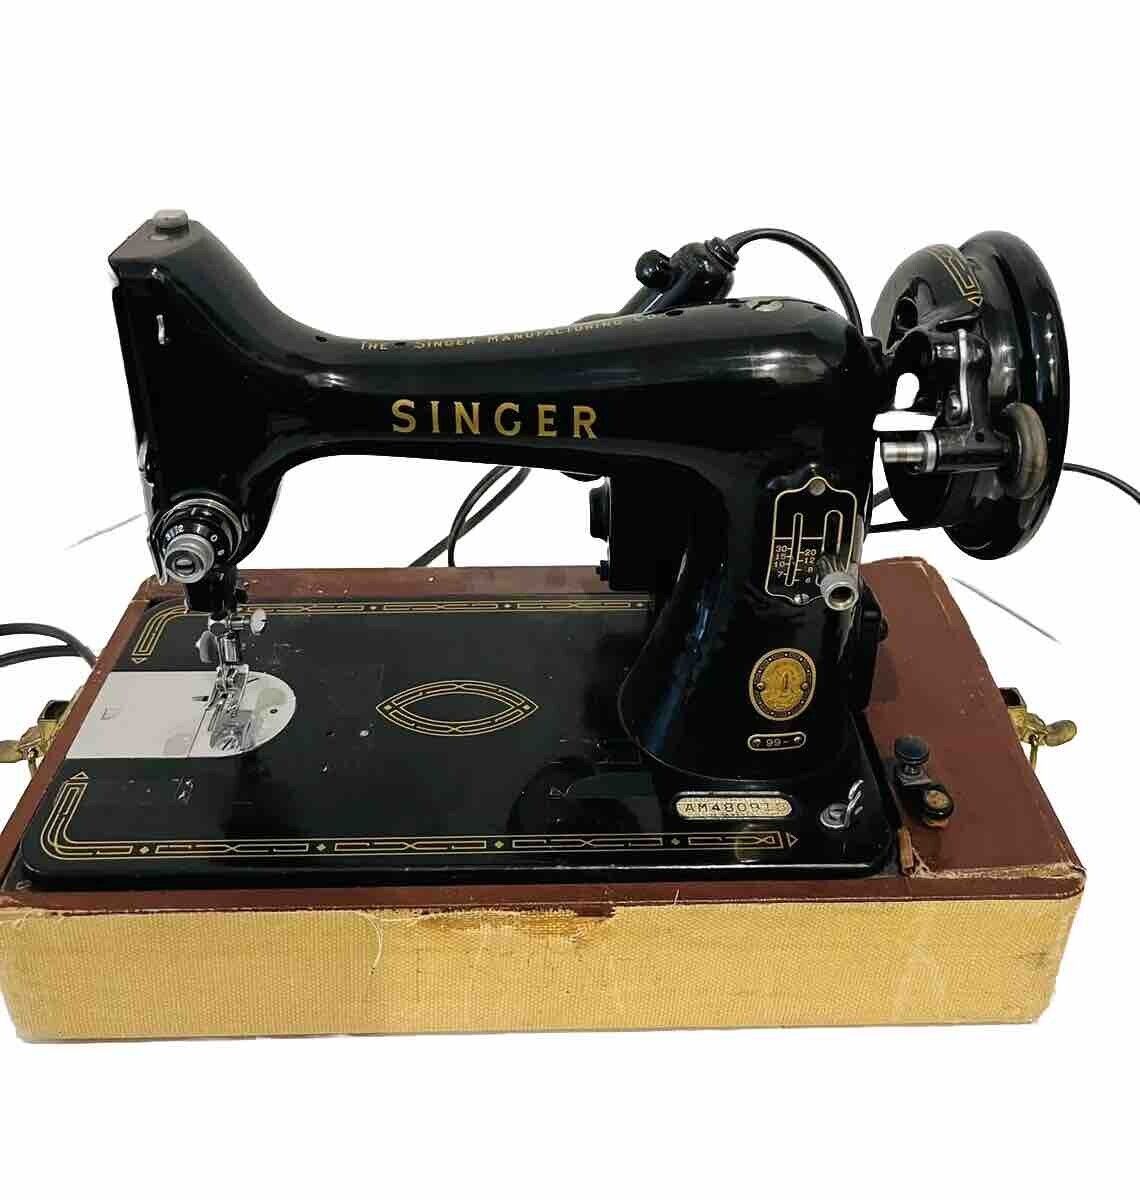 Vintage Singer Sewing Machine Model 99- Portable Black Pedal Hard Case WORKS